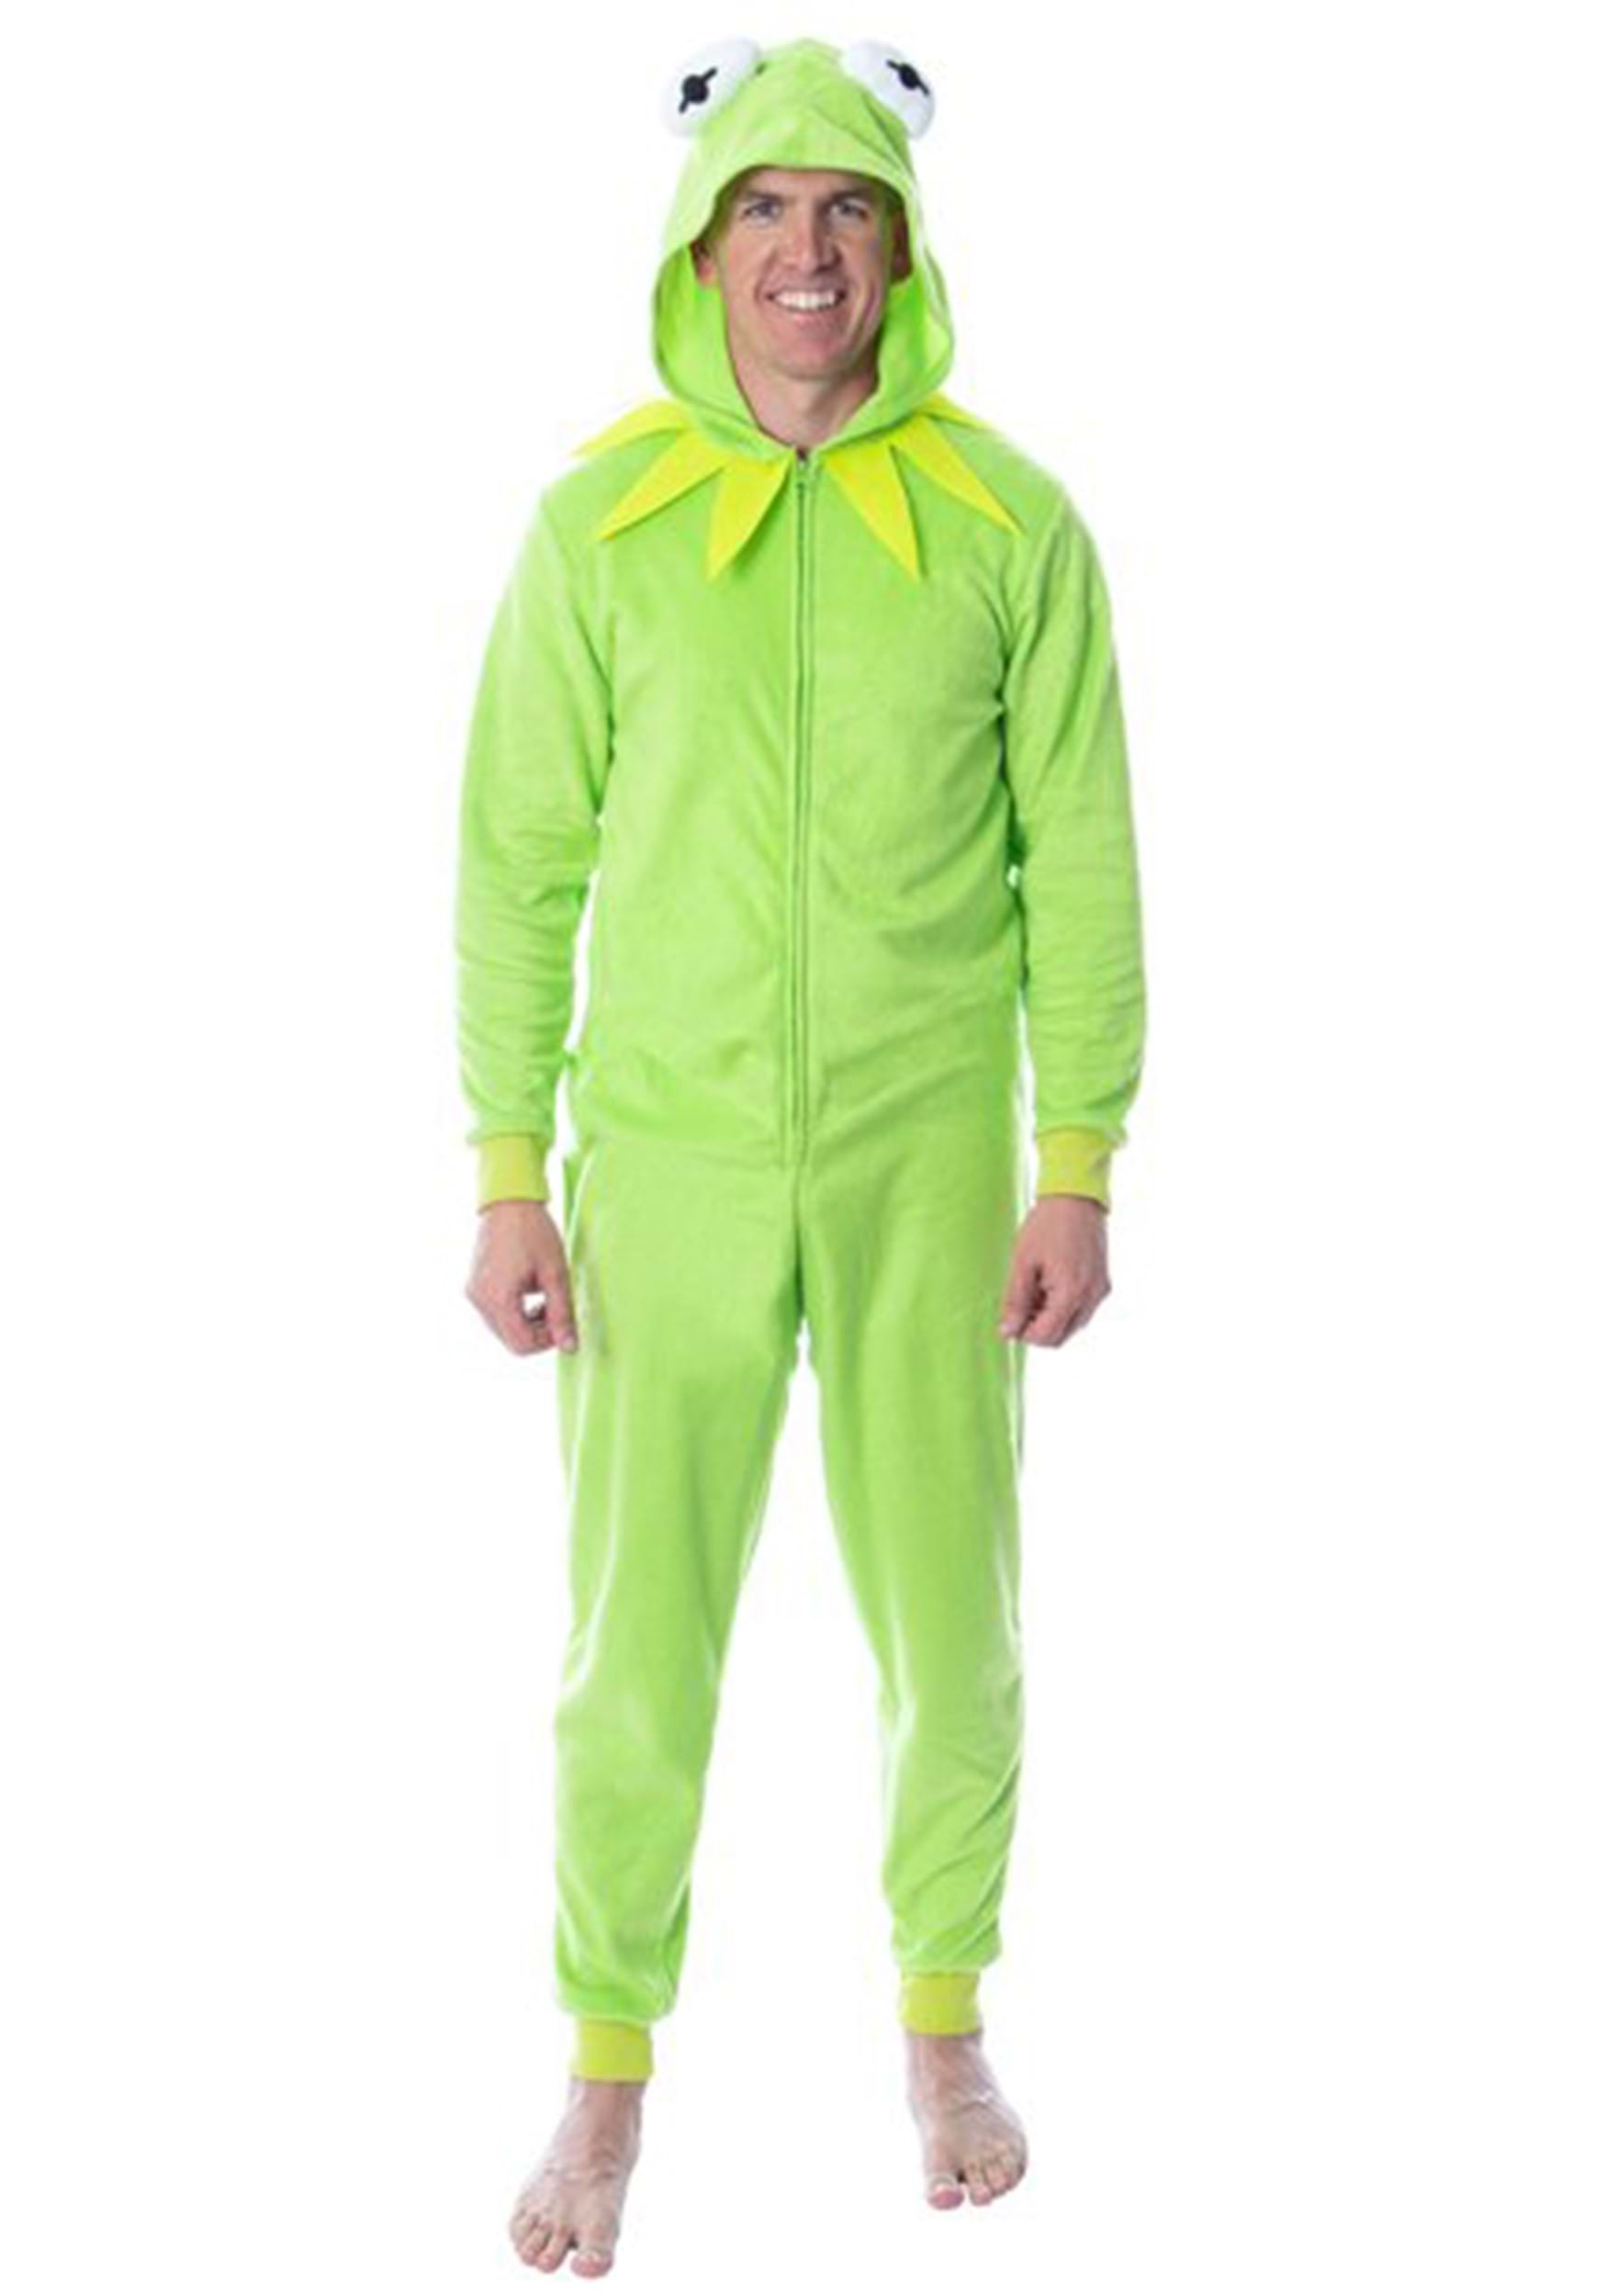 Kermit Union Suit for Adults